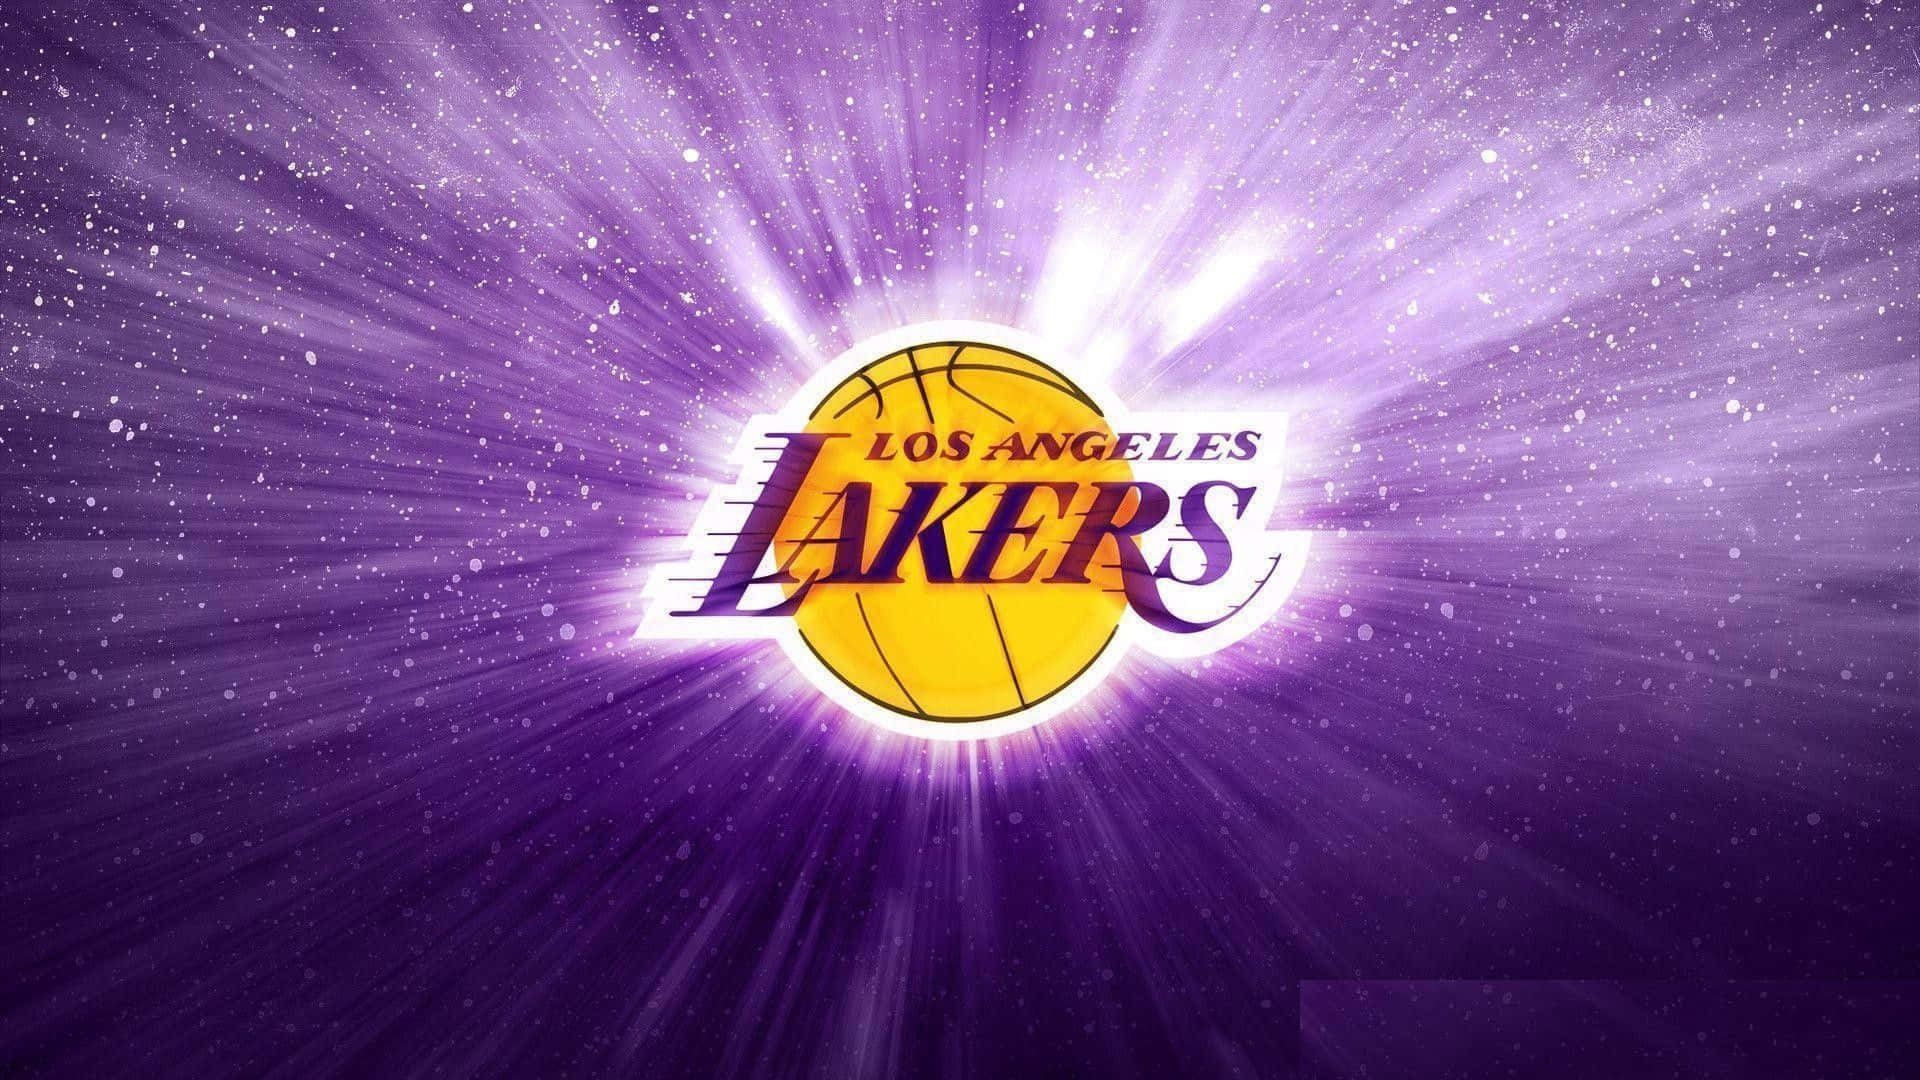 Lakerssejr: Mestre I 2020!